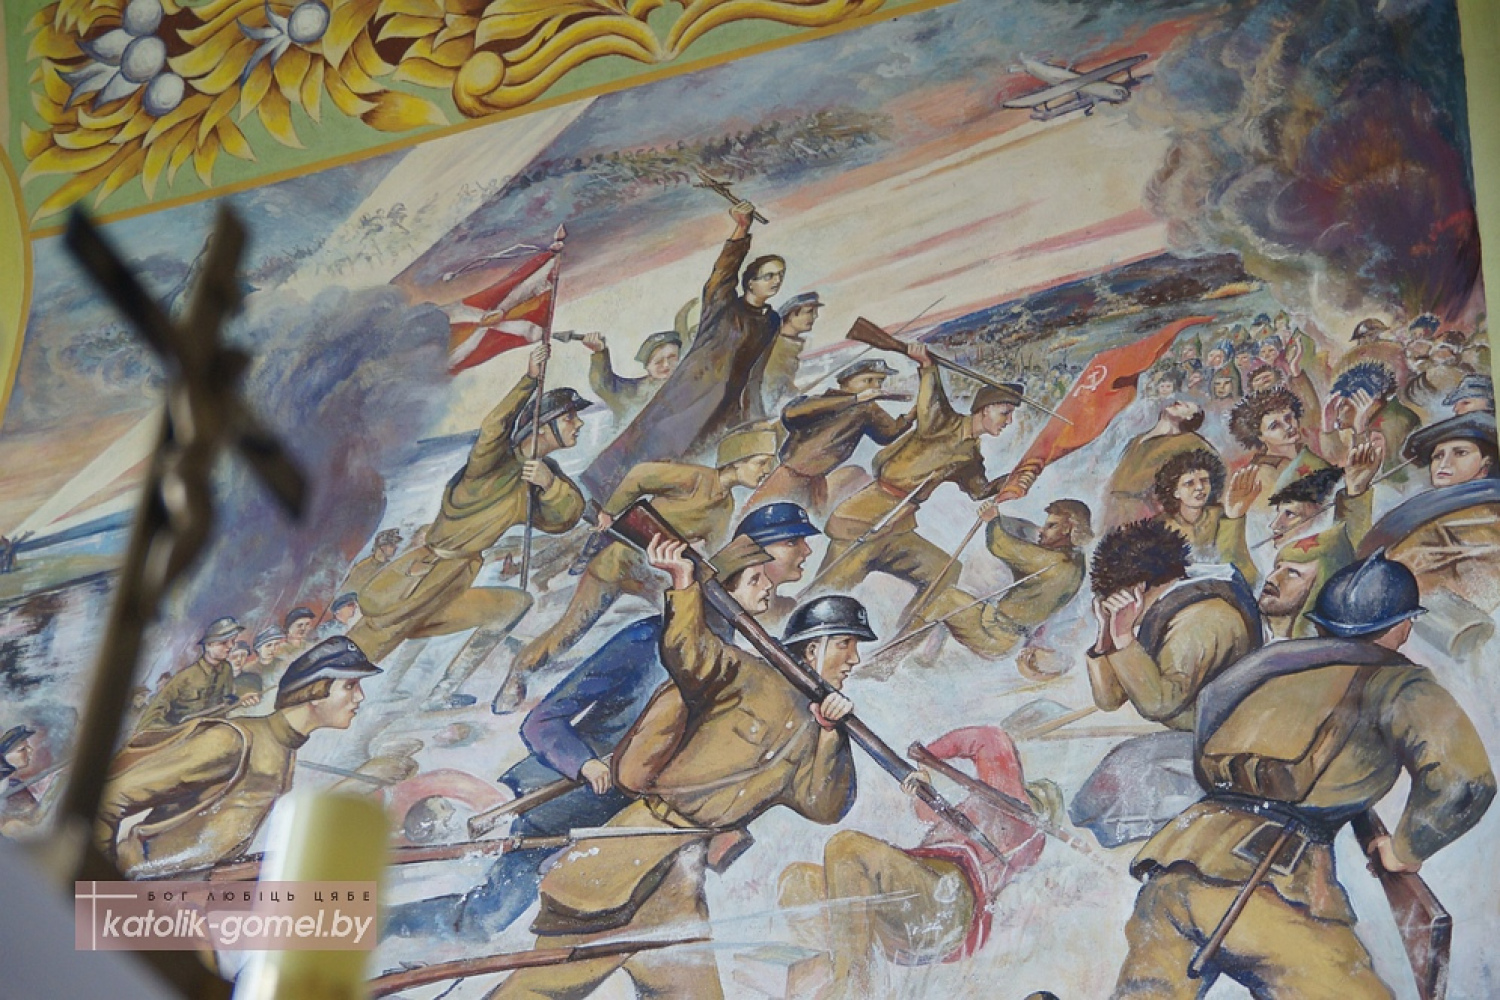 Как при коммунистах: в костеле на Гродненщине требуют закрасить фреску